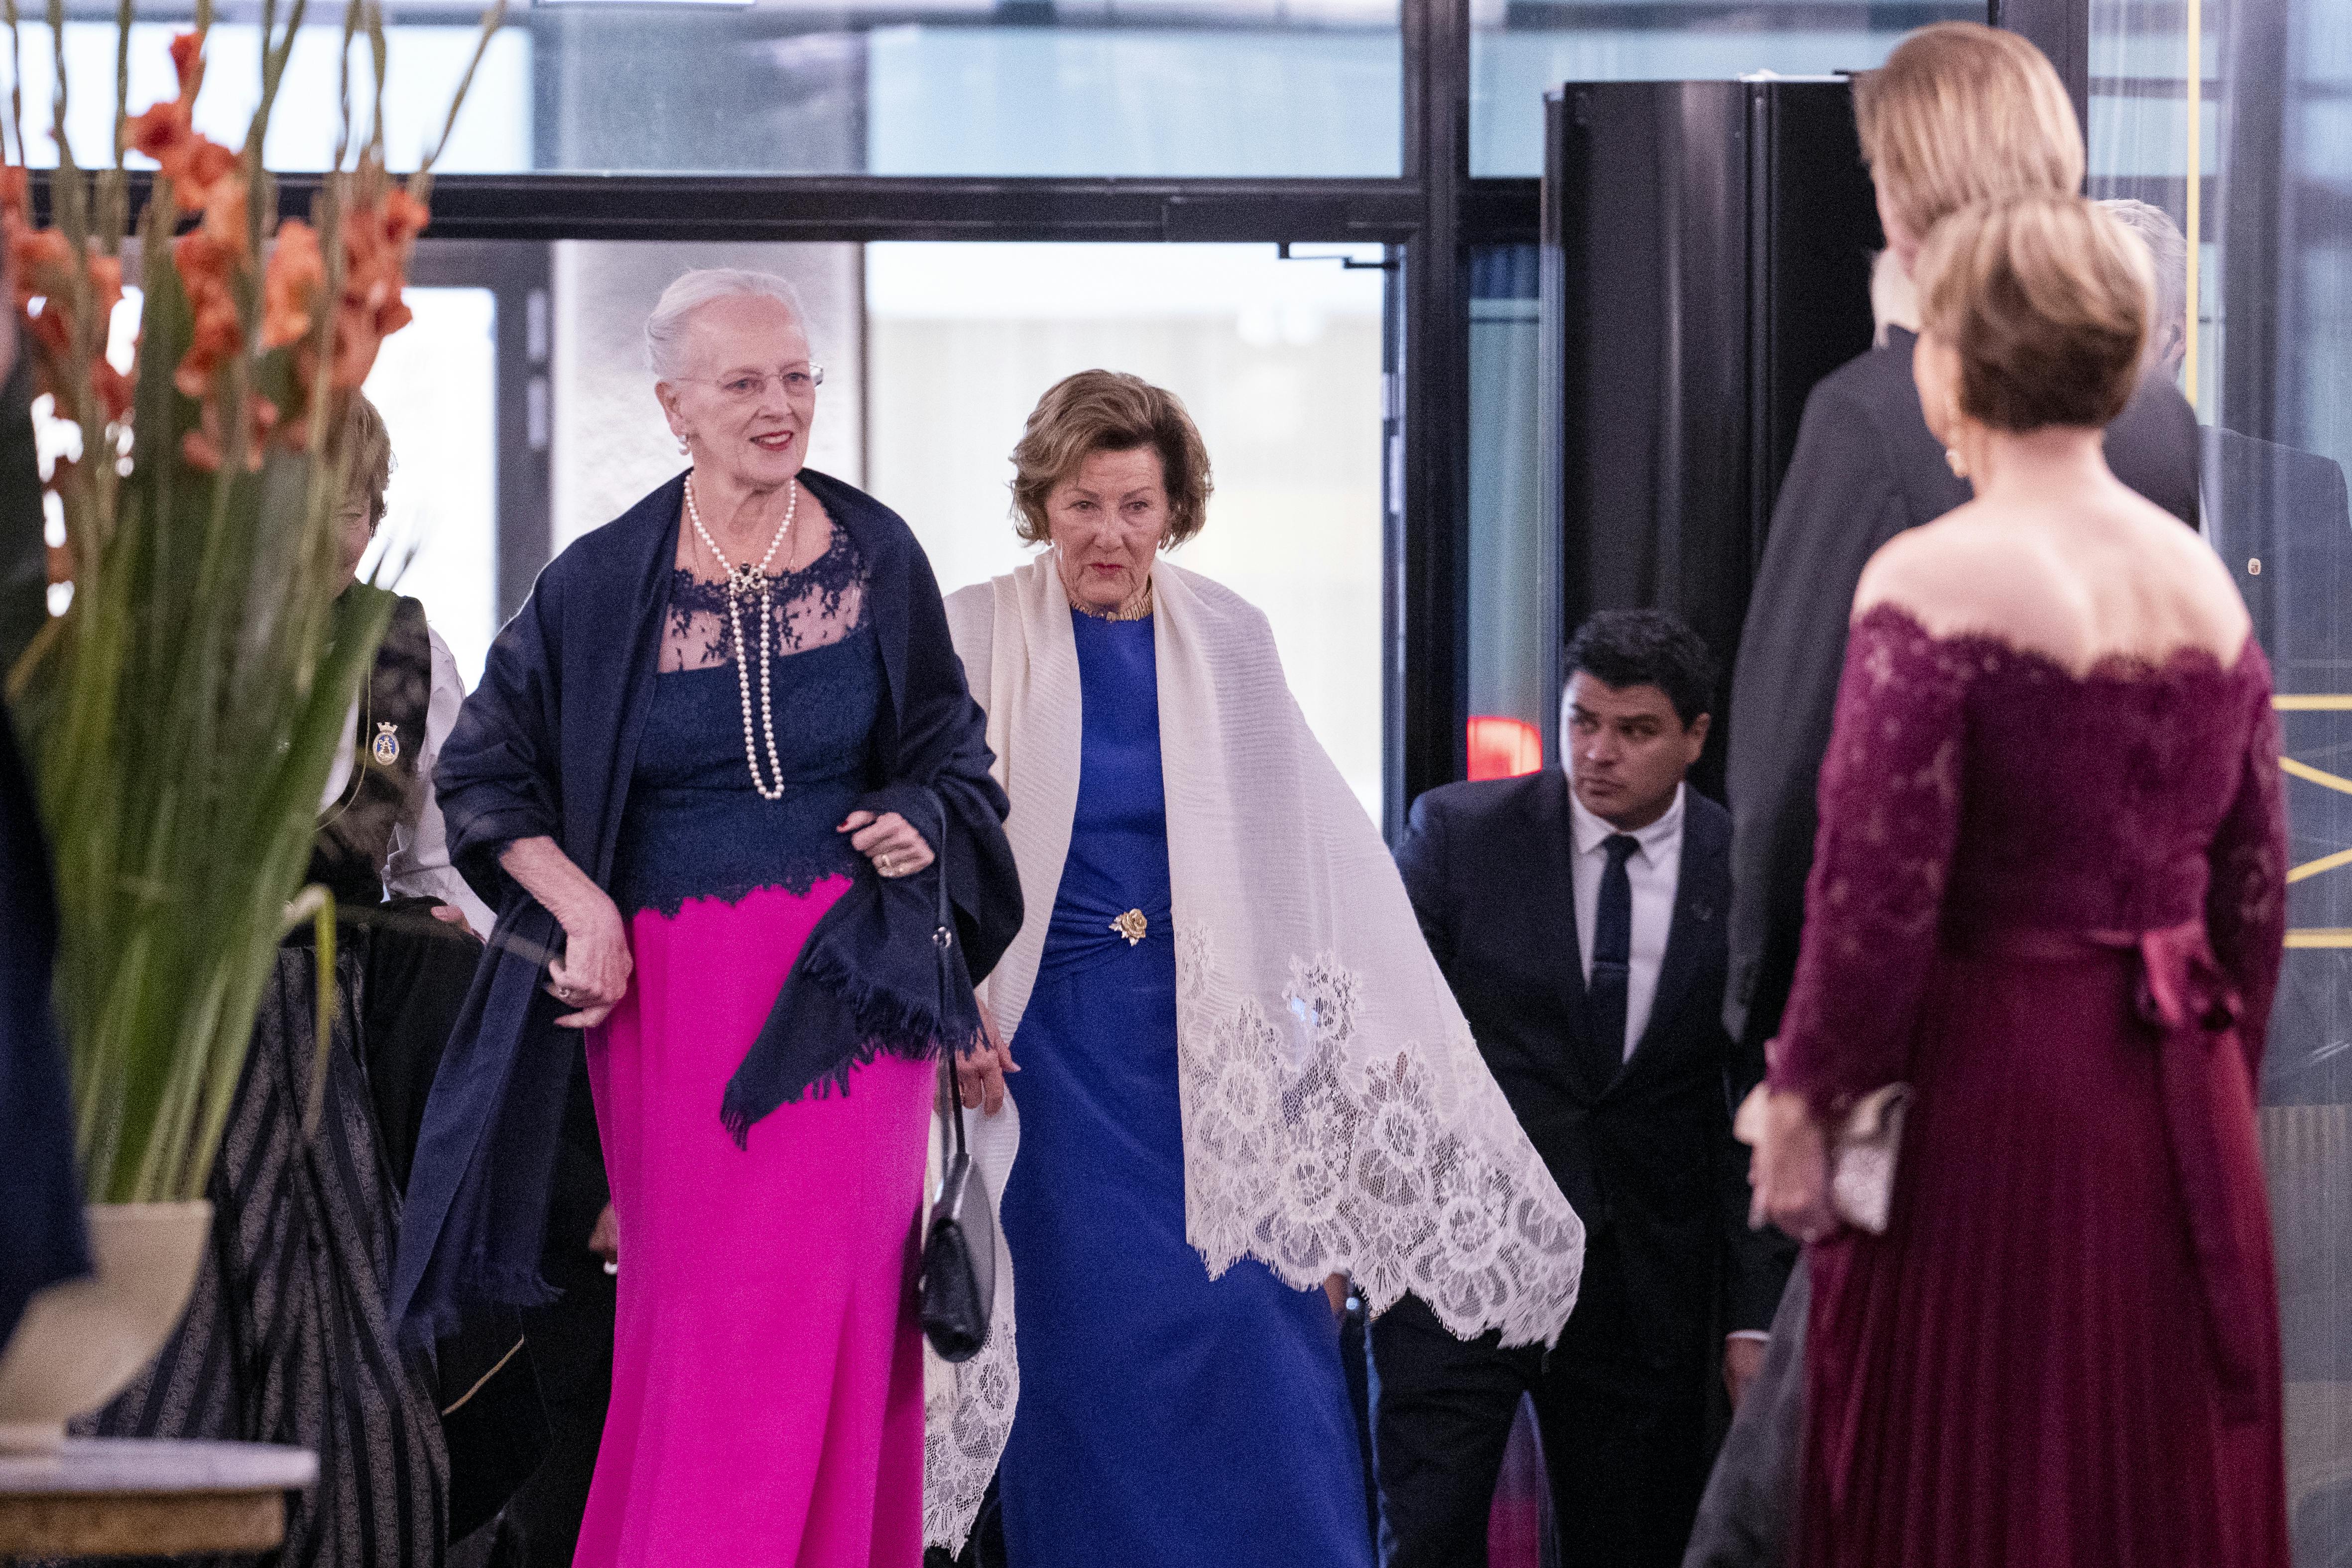 Dronning Margrethe og dronning Sonja ankommer til festmiddagen på Grand Hotel mandag aften. Venstre hånd var svøbt i tørklædet.